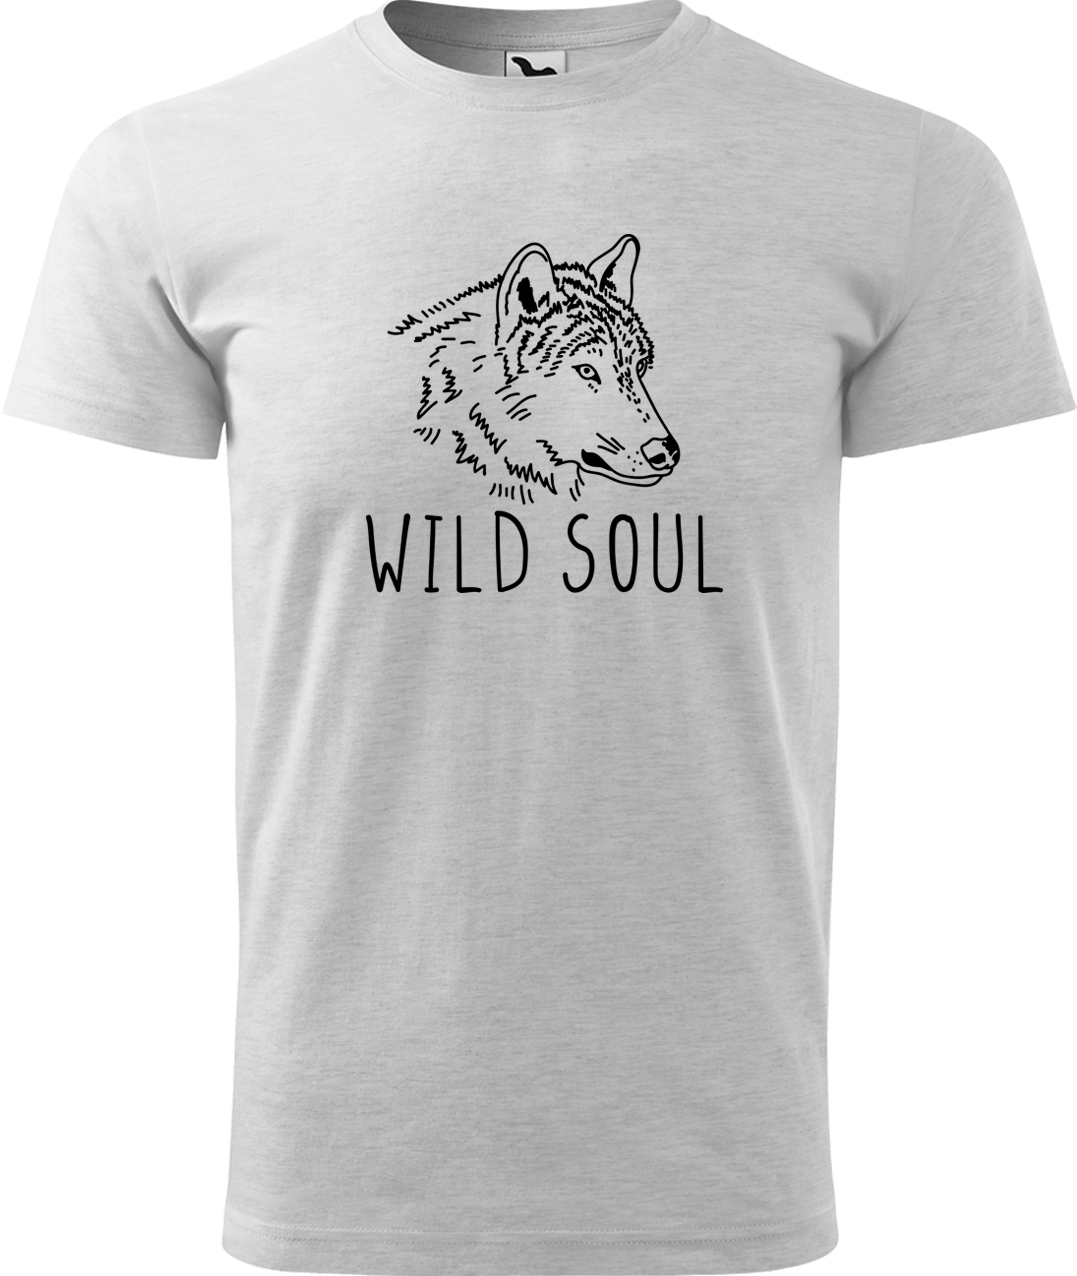 Pánské tričko s vlkem - Wild soul Velikost: XL, Barva: Světle šedý melír (03), Střih: pánský